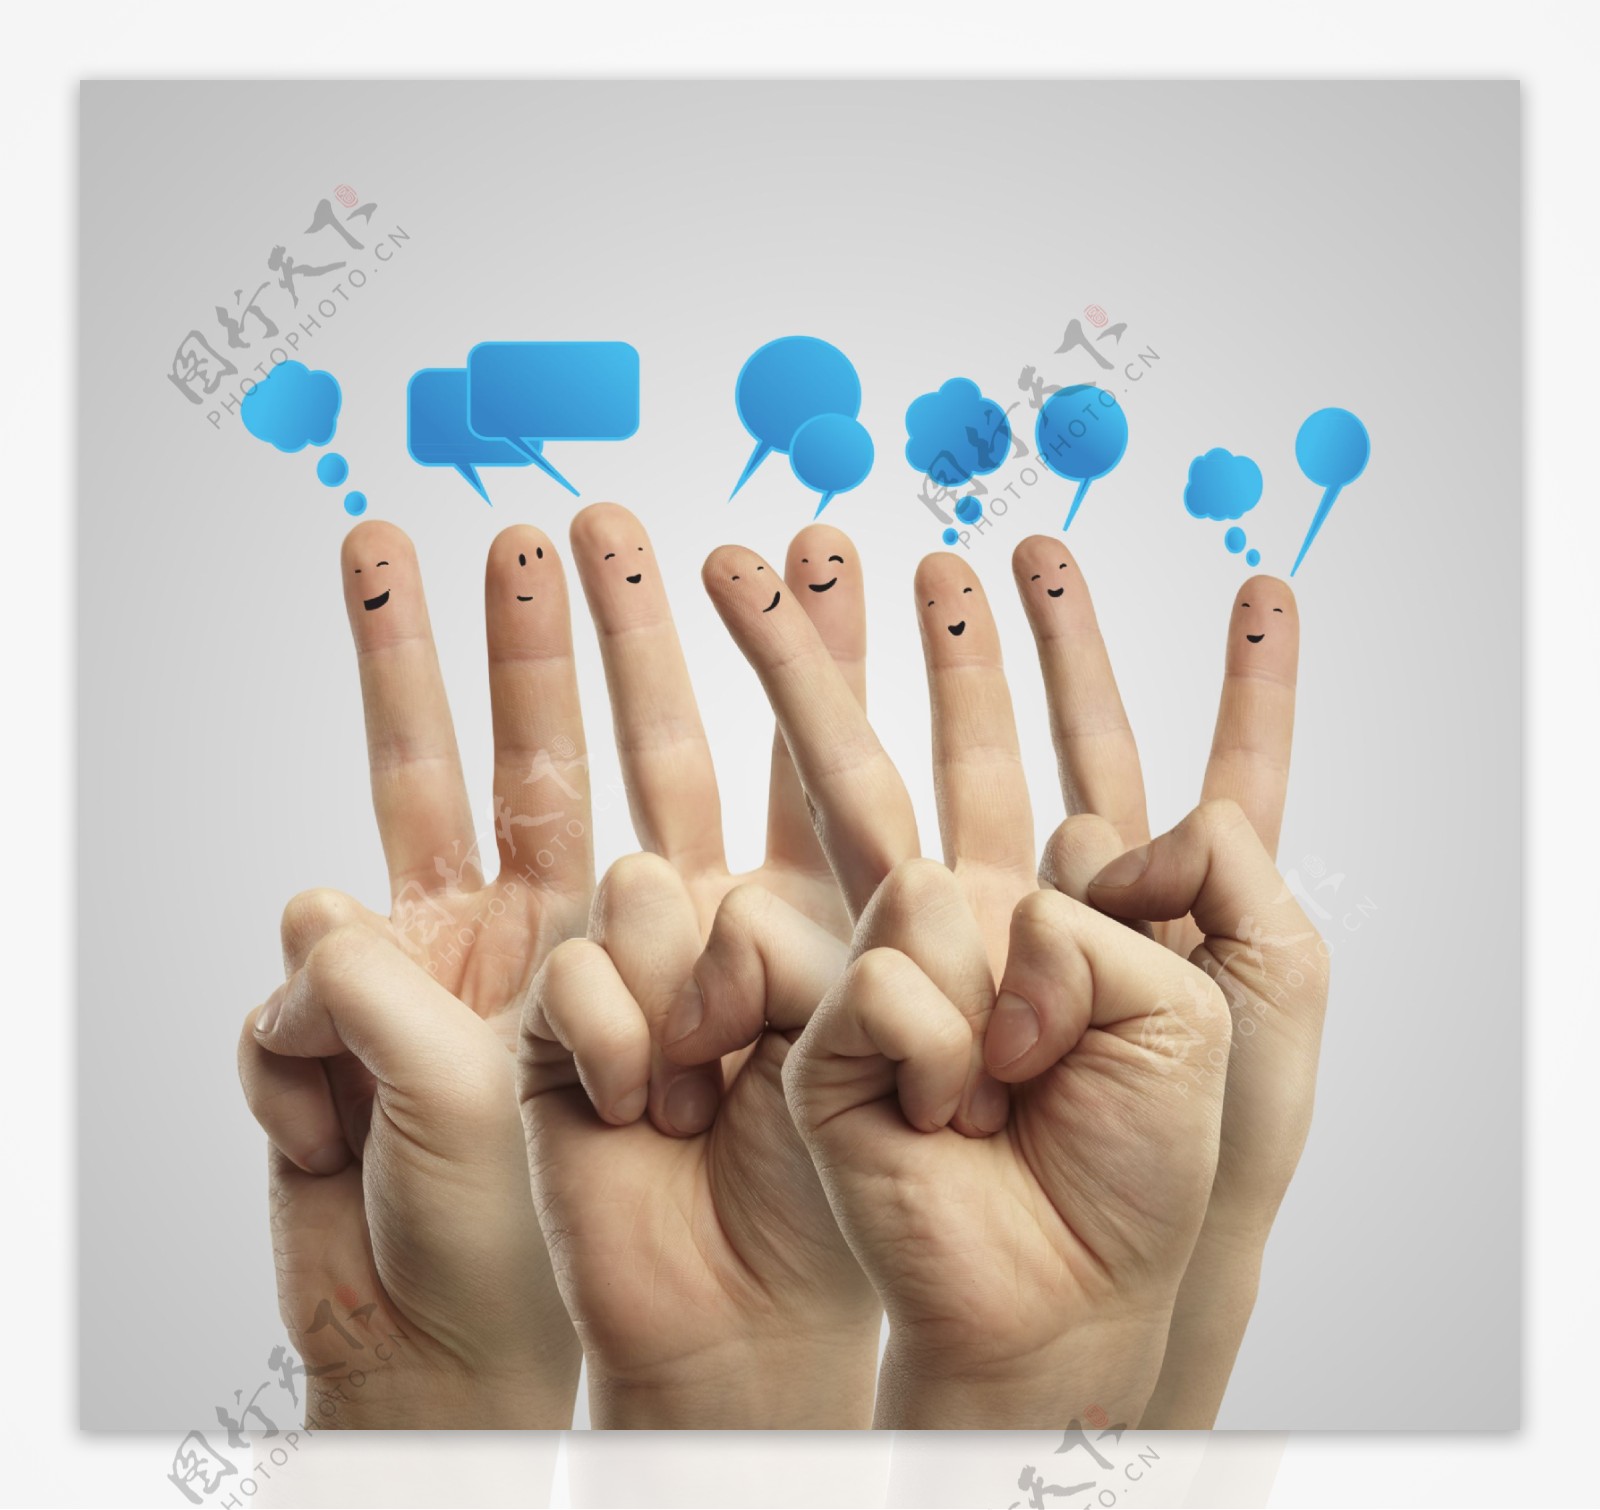 对话框与手指表情图片